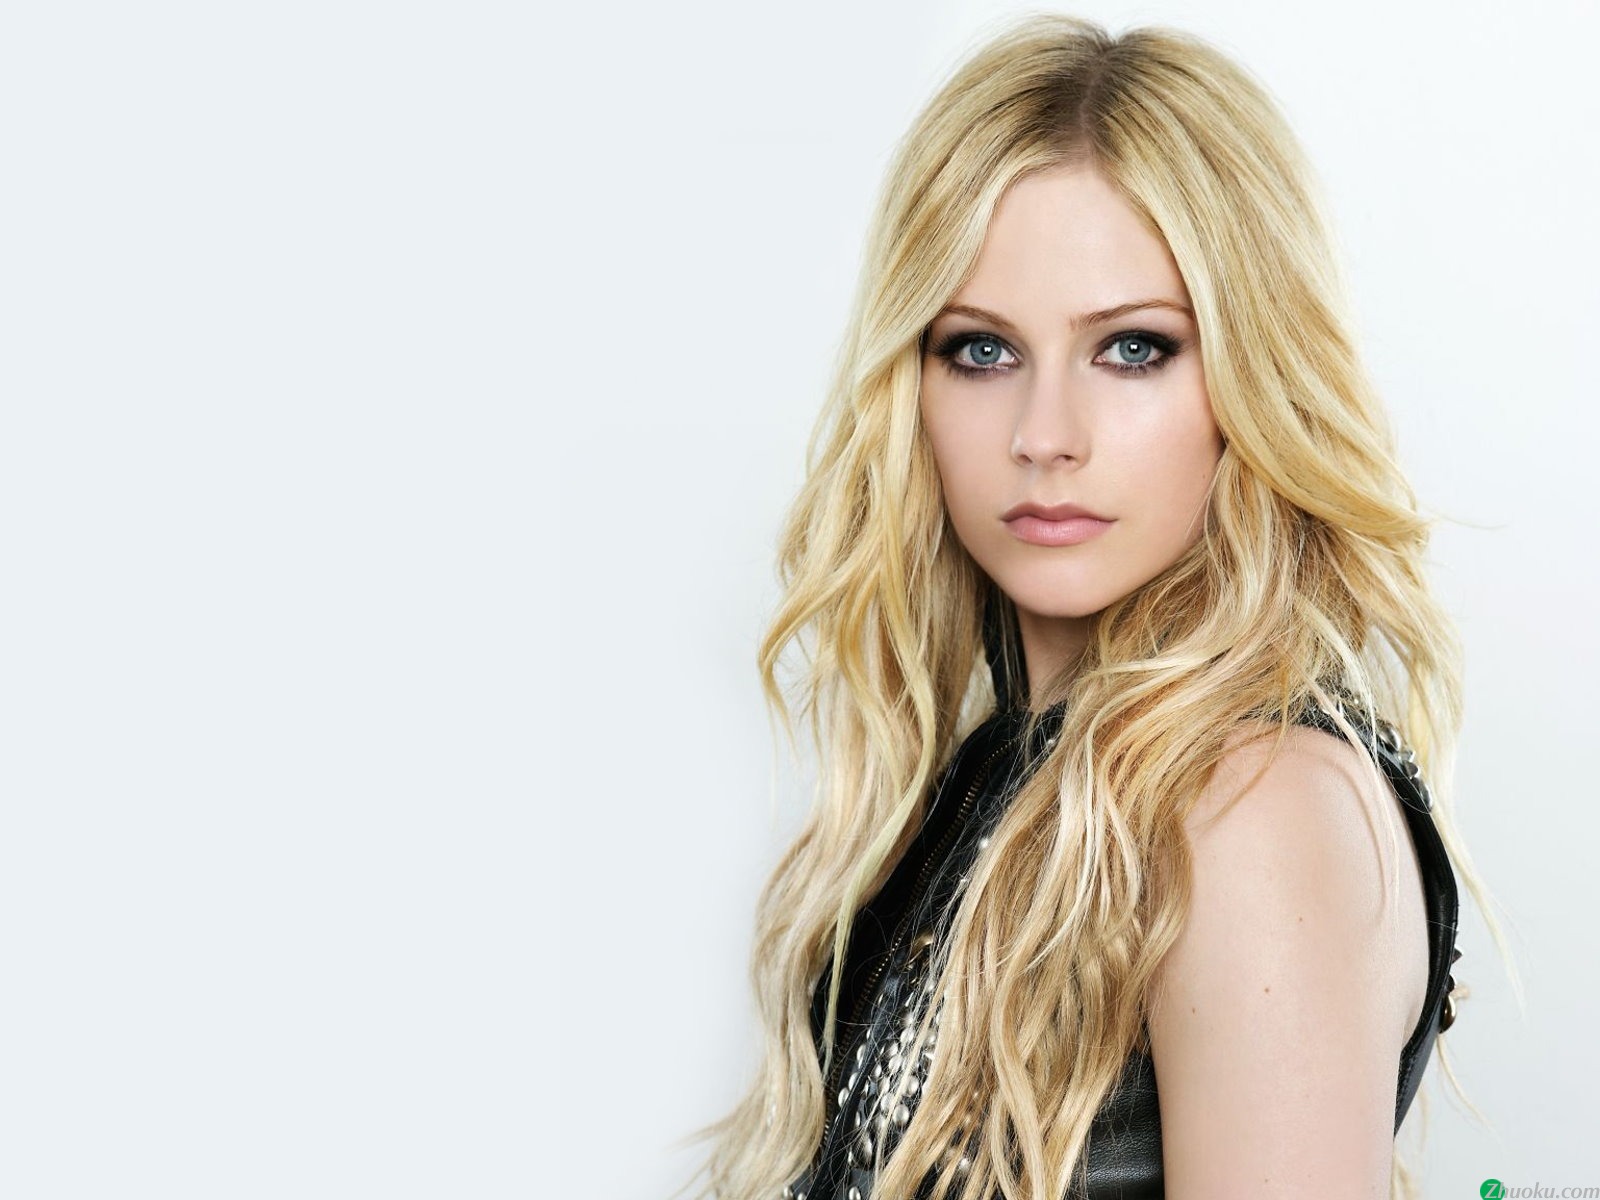 壁纸1600x1200艾薇儿 Avril Lavigne 壁纸24壁纸 艾薇儿 Avril Lavigne壁纸 艾薇儿 Avril Lavigne图片 艾薇儿 Avril Lavigne素材 明星壁纸 明星图库 明星图片素材桌面壁纸